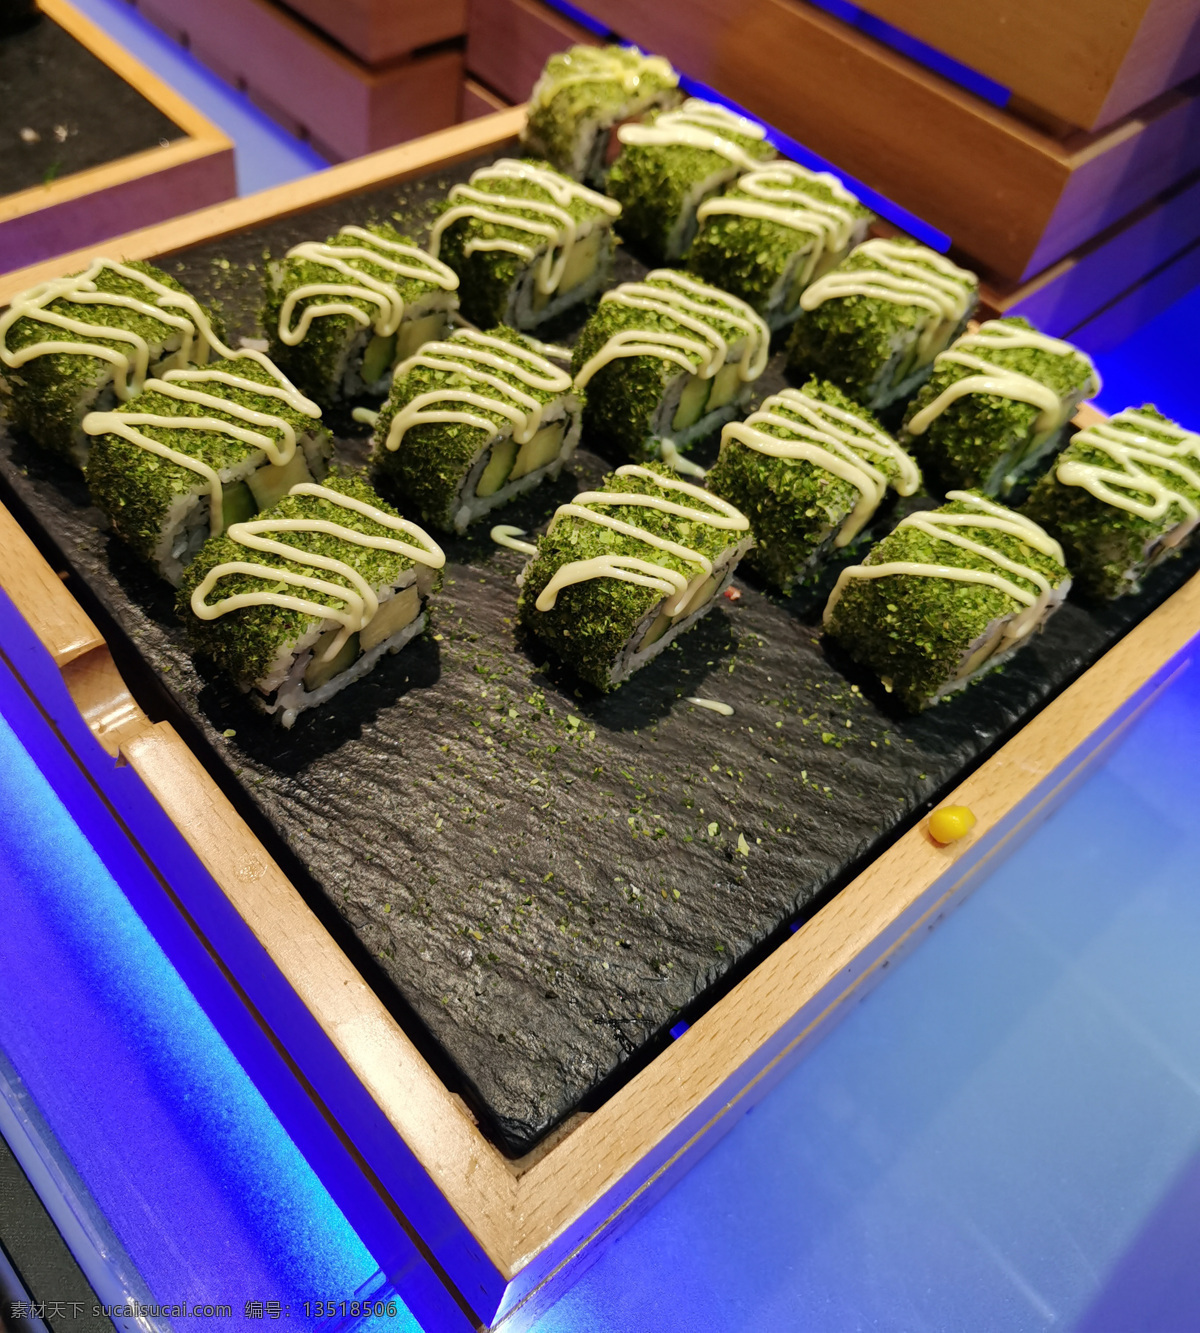 海苔寿司图片 海苔寿司 寿司 日料 日式食品 寿司盘 餐饮美食 西餐美食